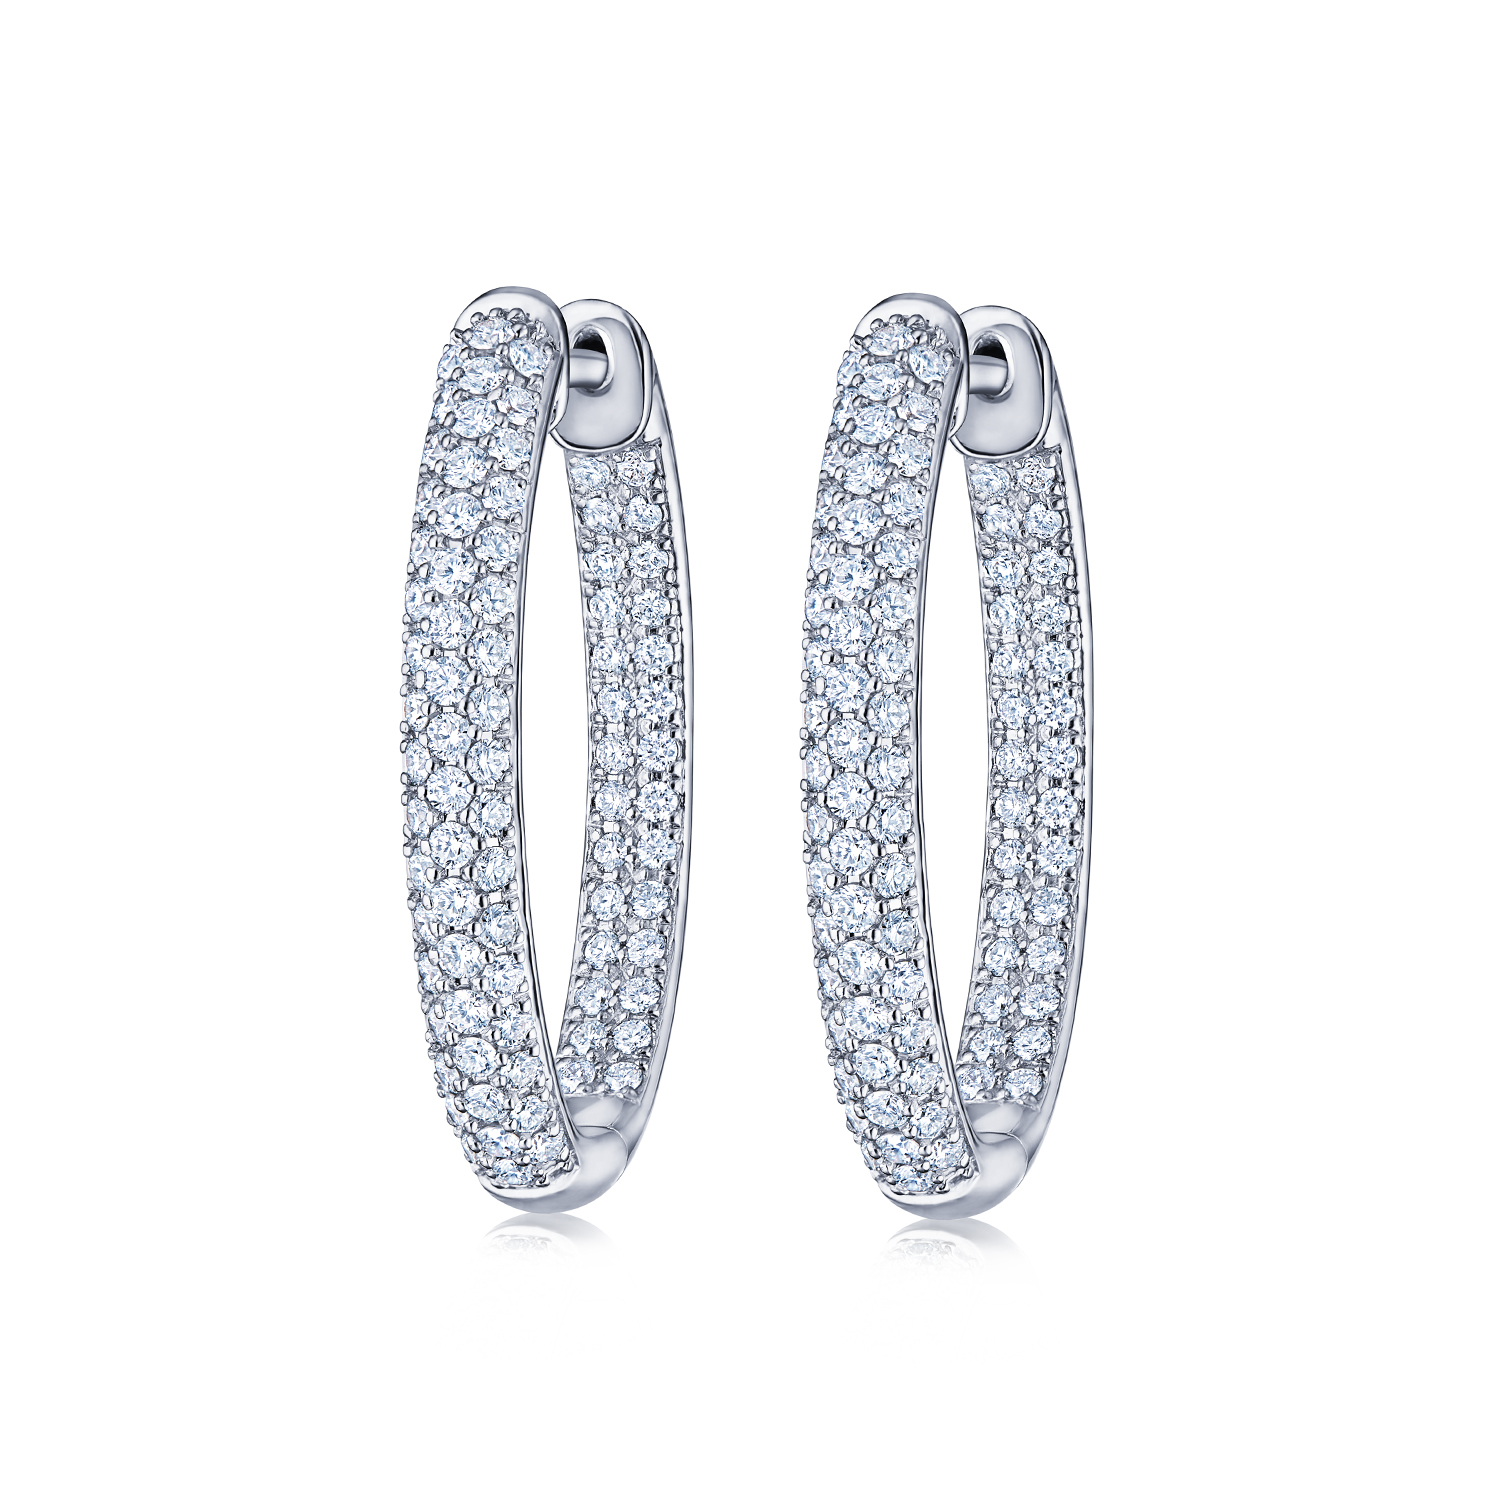 Moonlight Oval Hoop Earrings with Pavé Diamonds in 18K White Gold - Kwiat